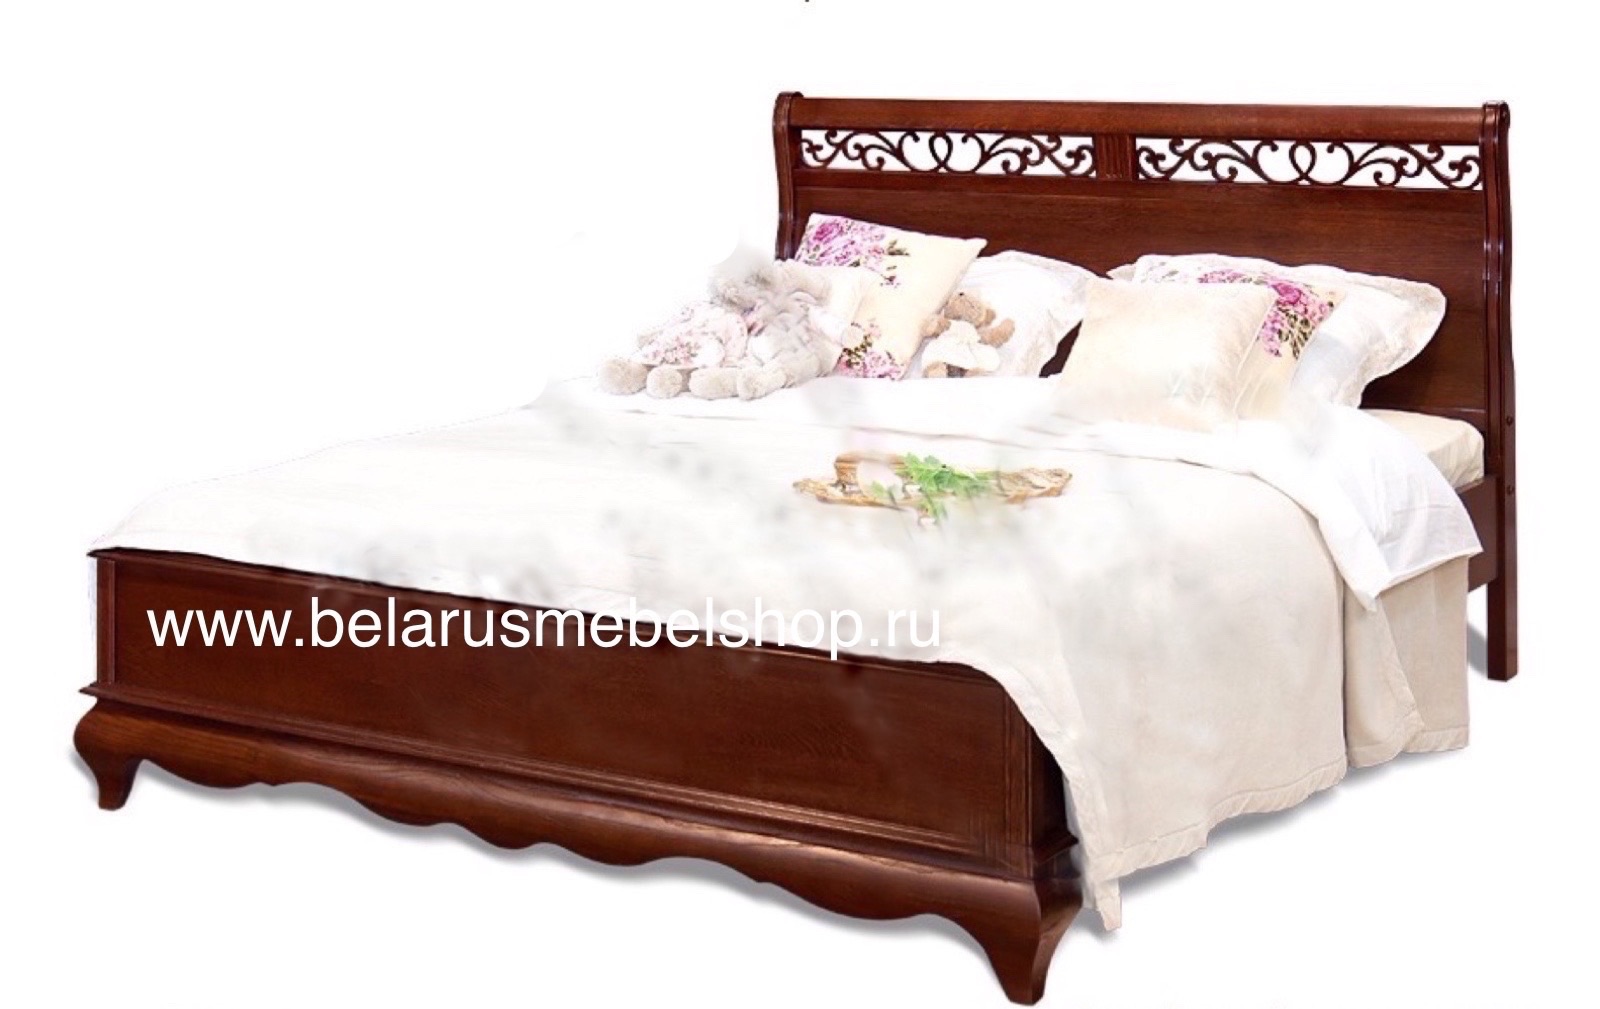 Белорусская Мебель Кровати Купить